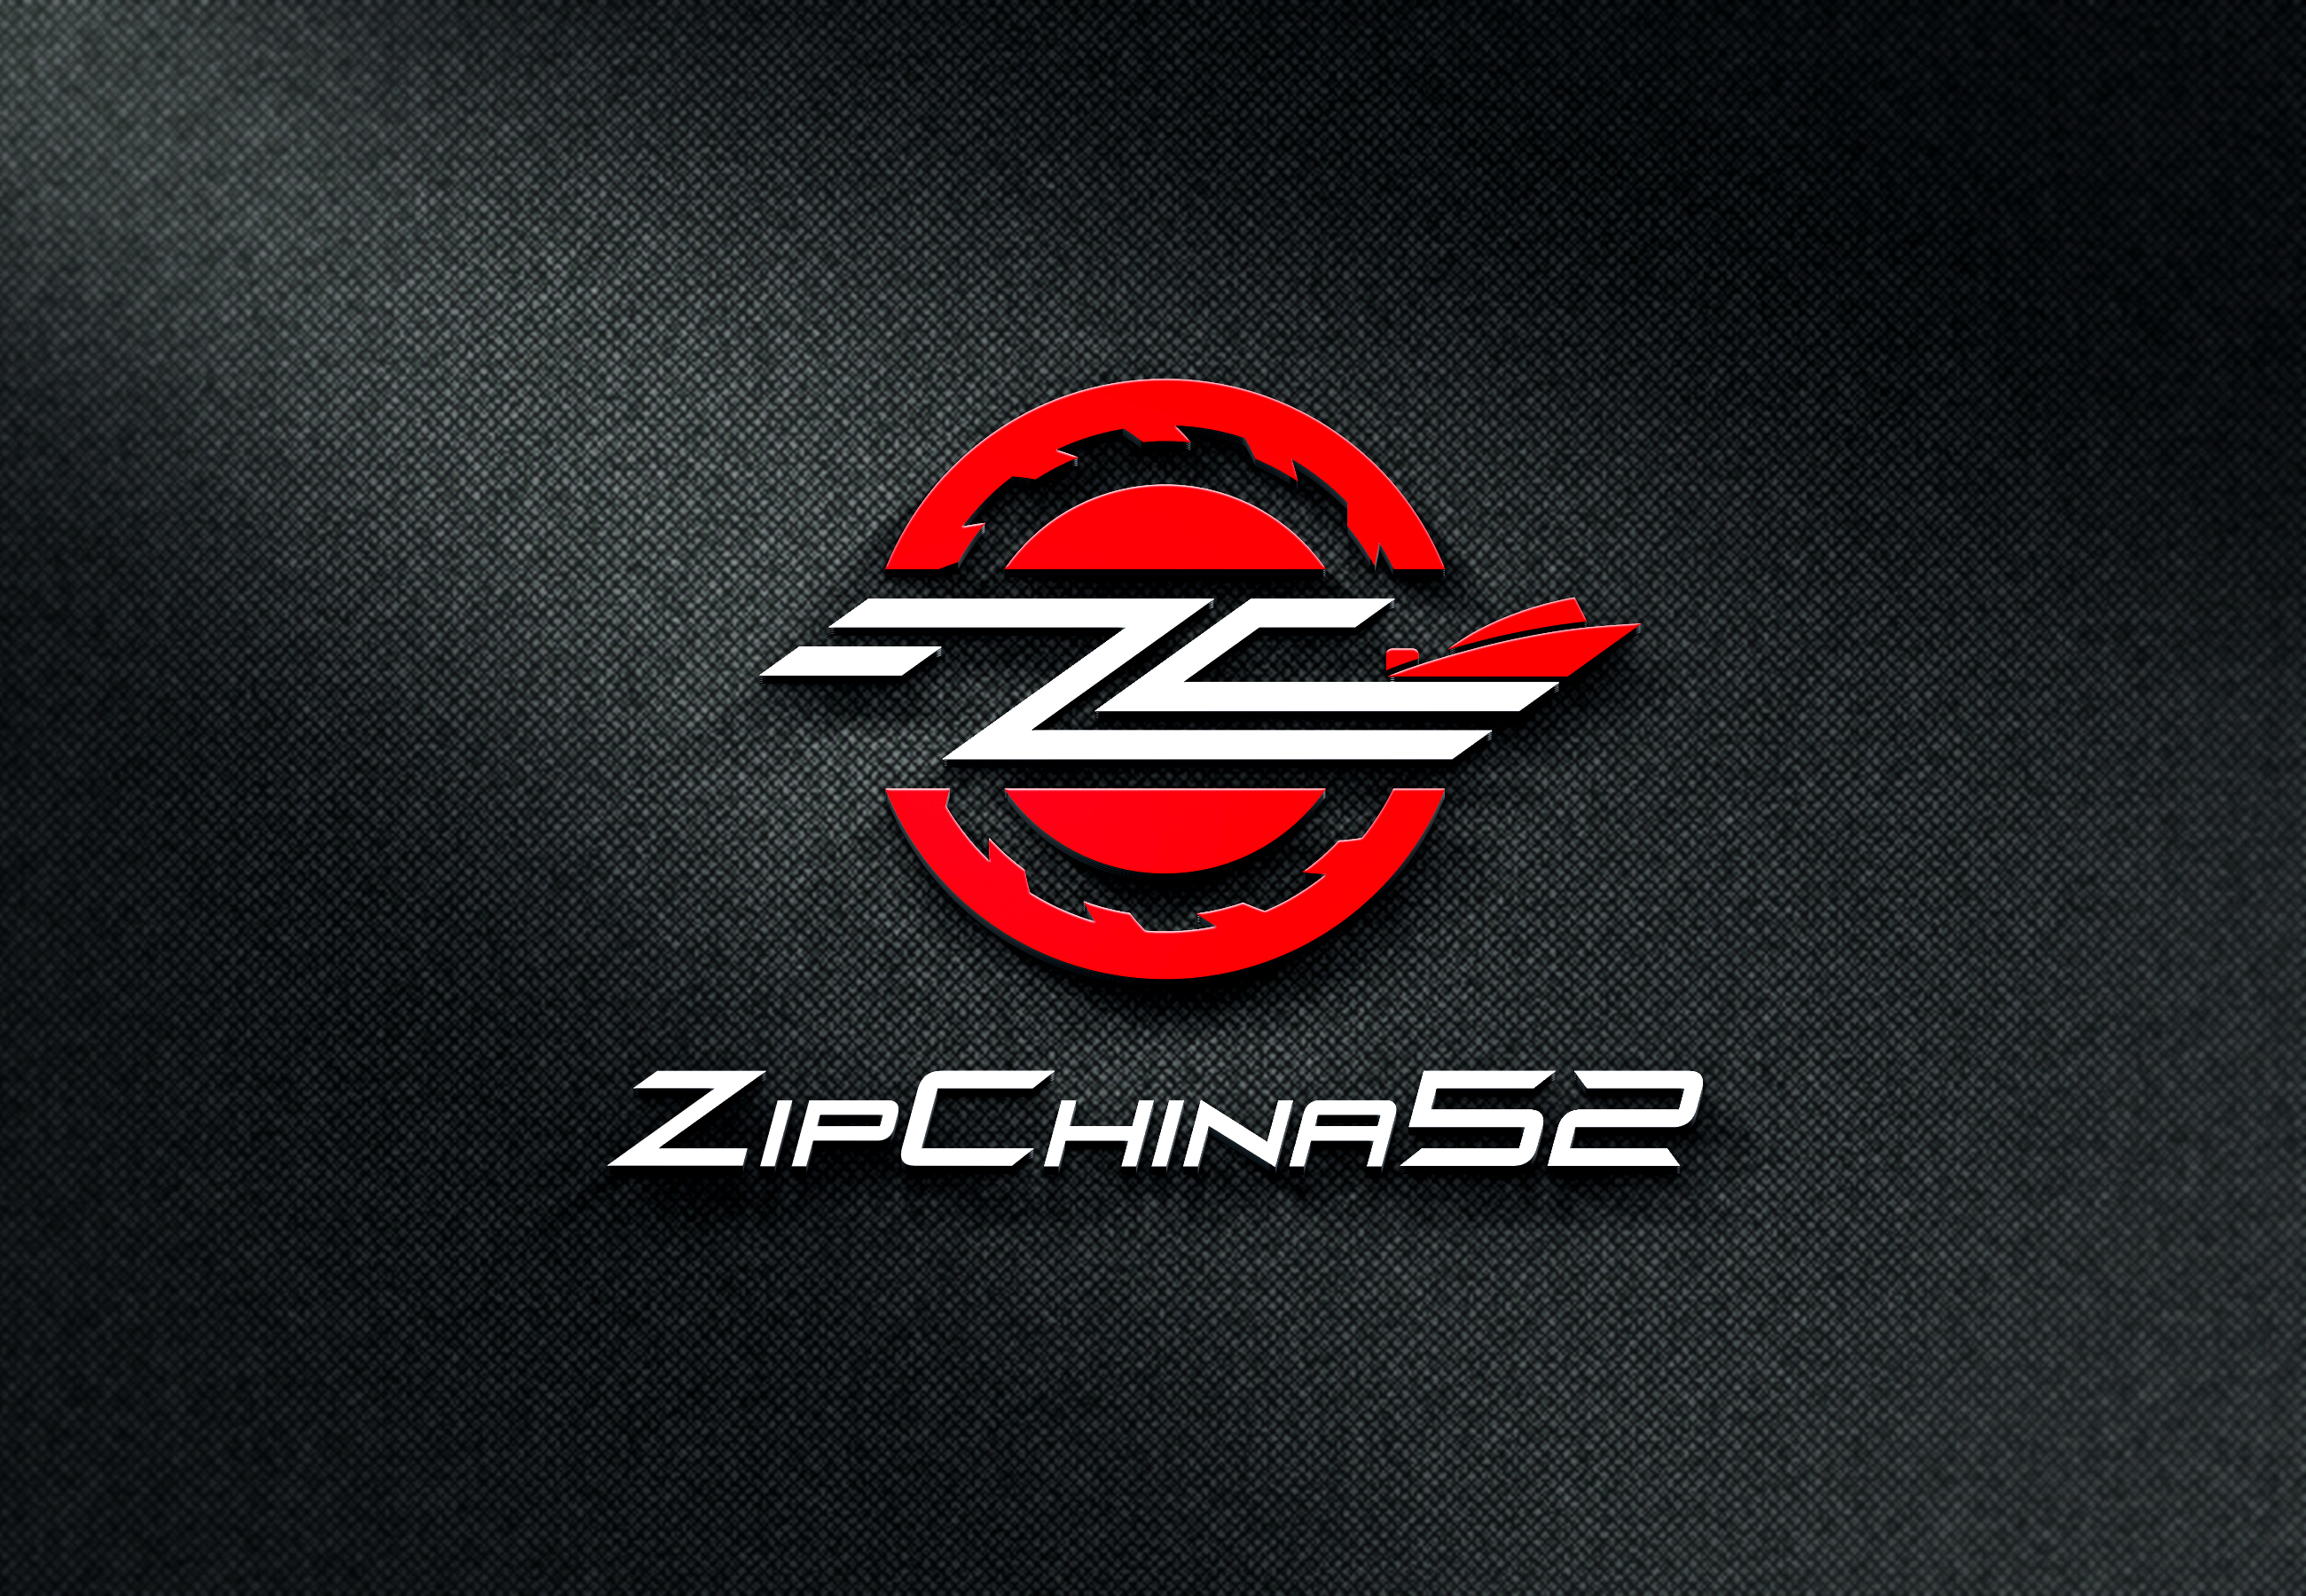 Распродажа ремней вариатора в магазине ZipChina52